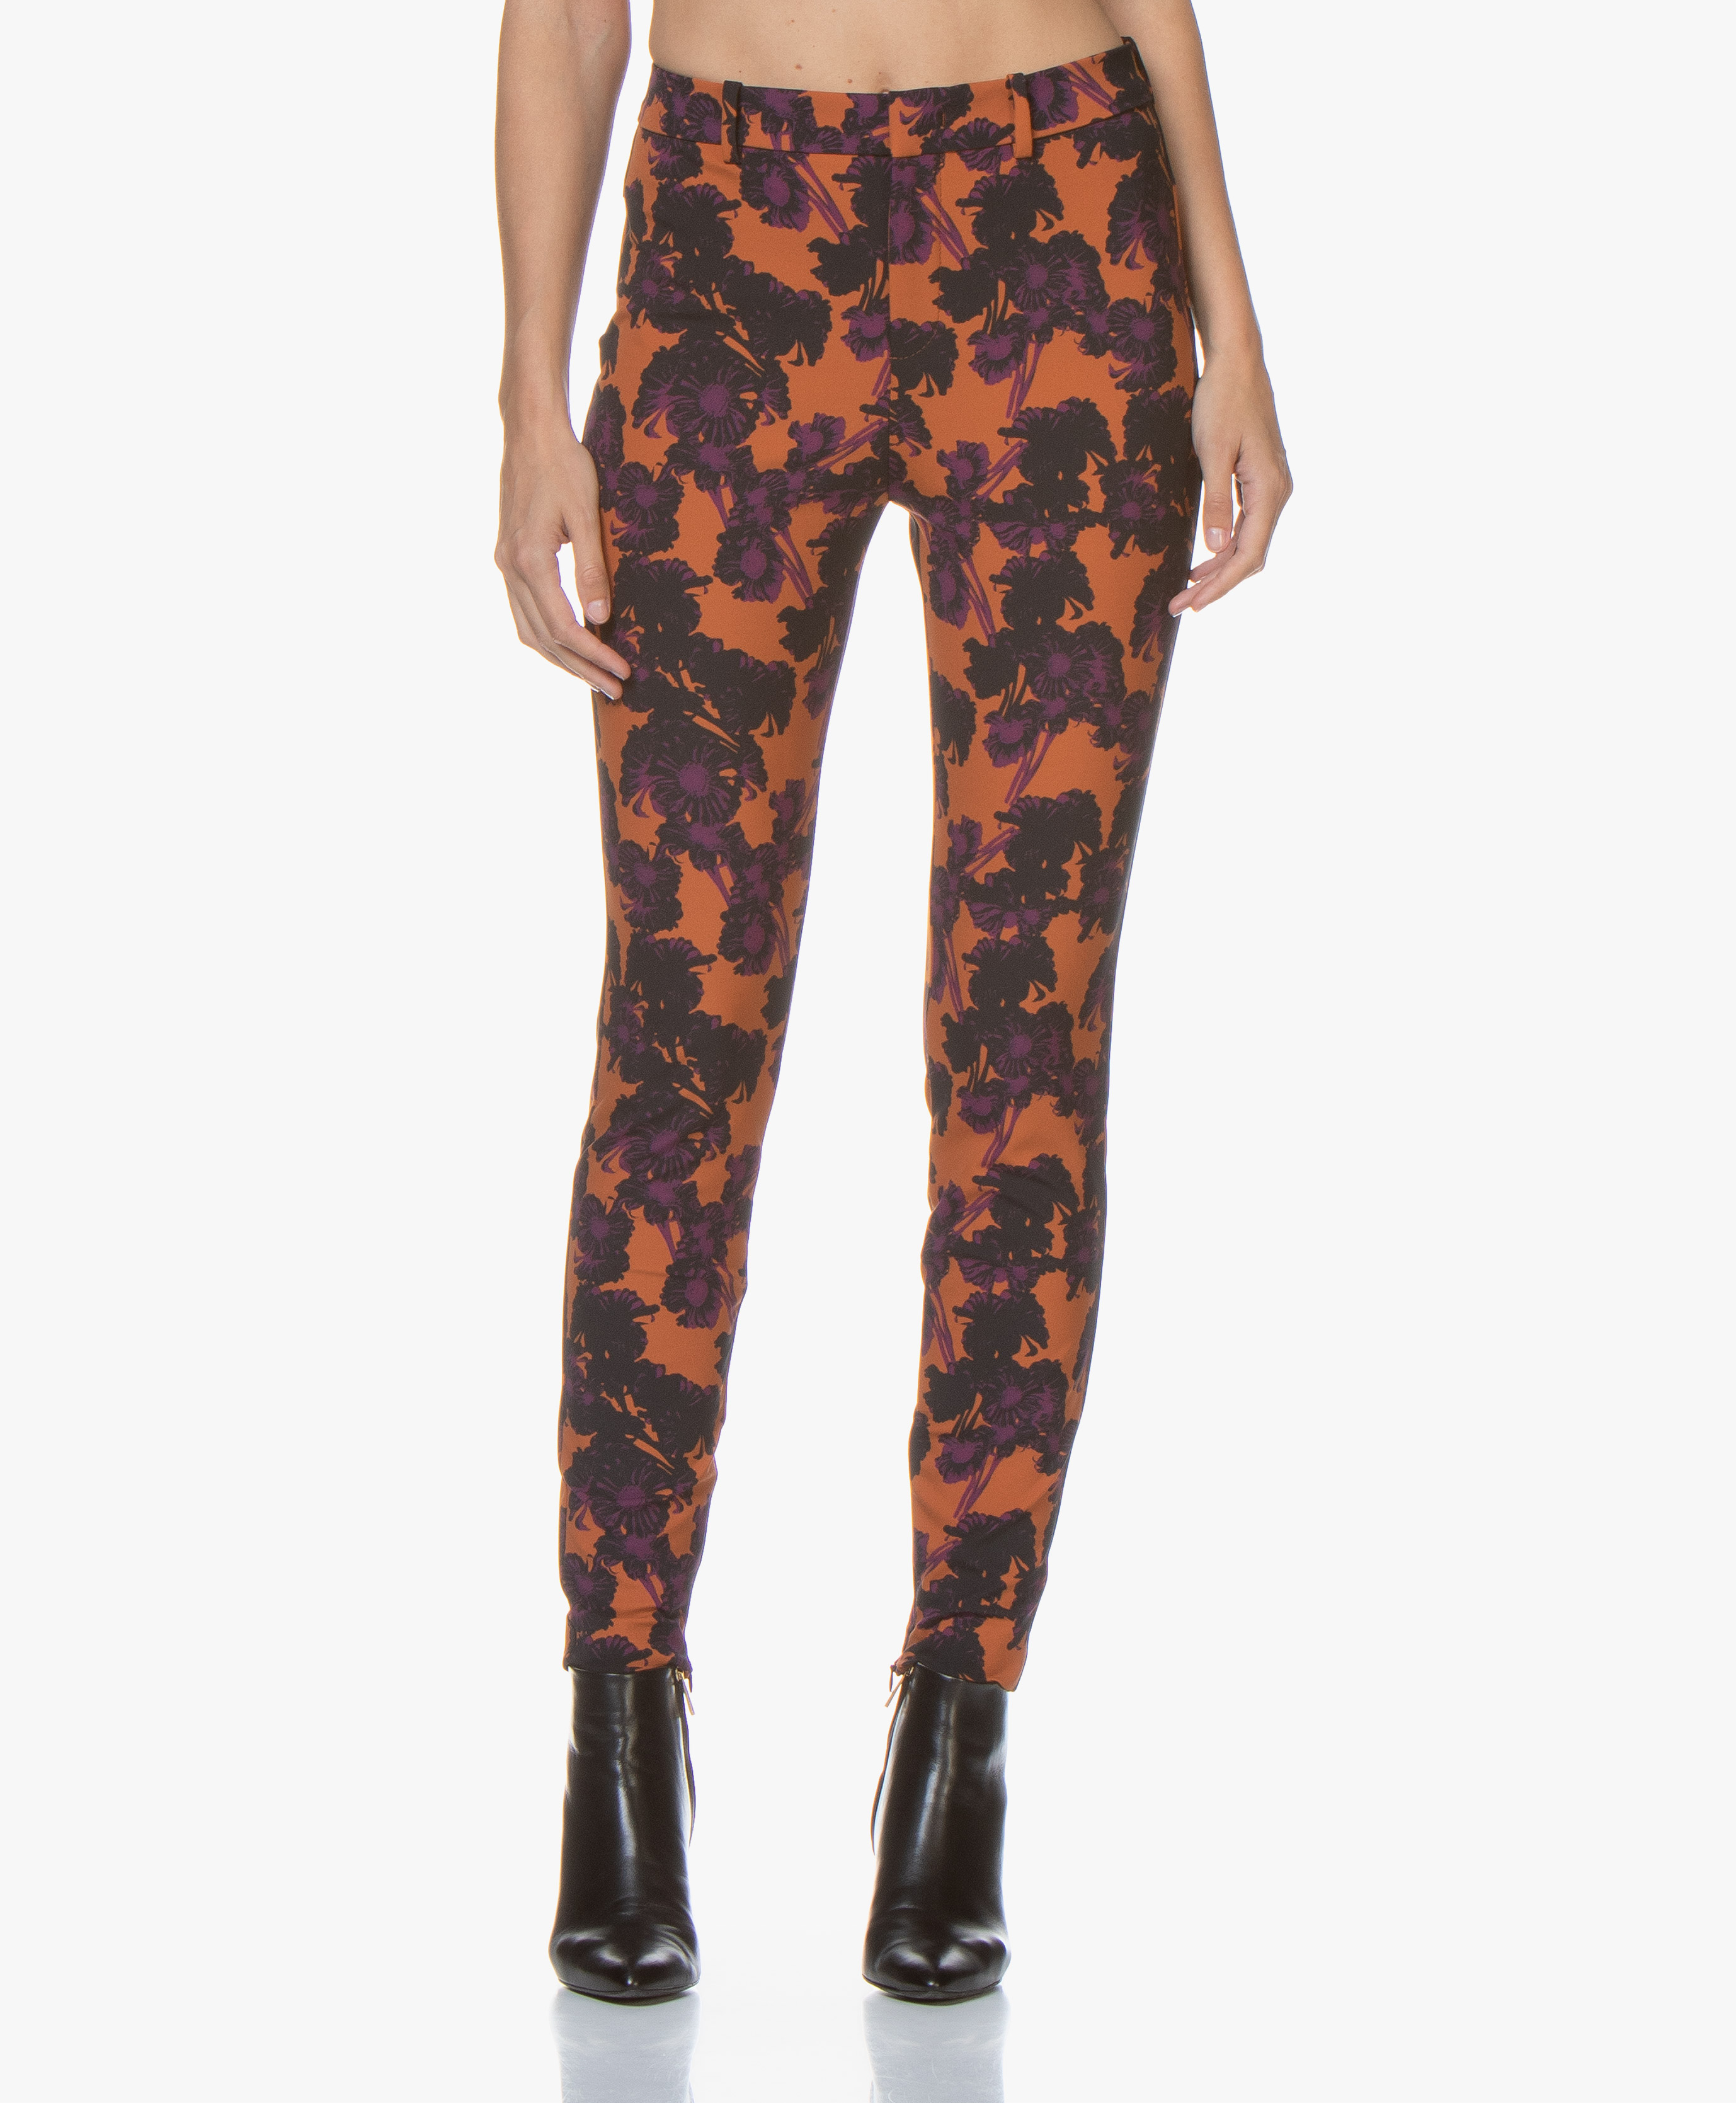 skinny floral pants